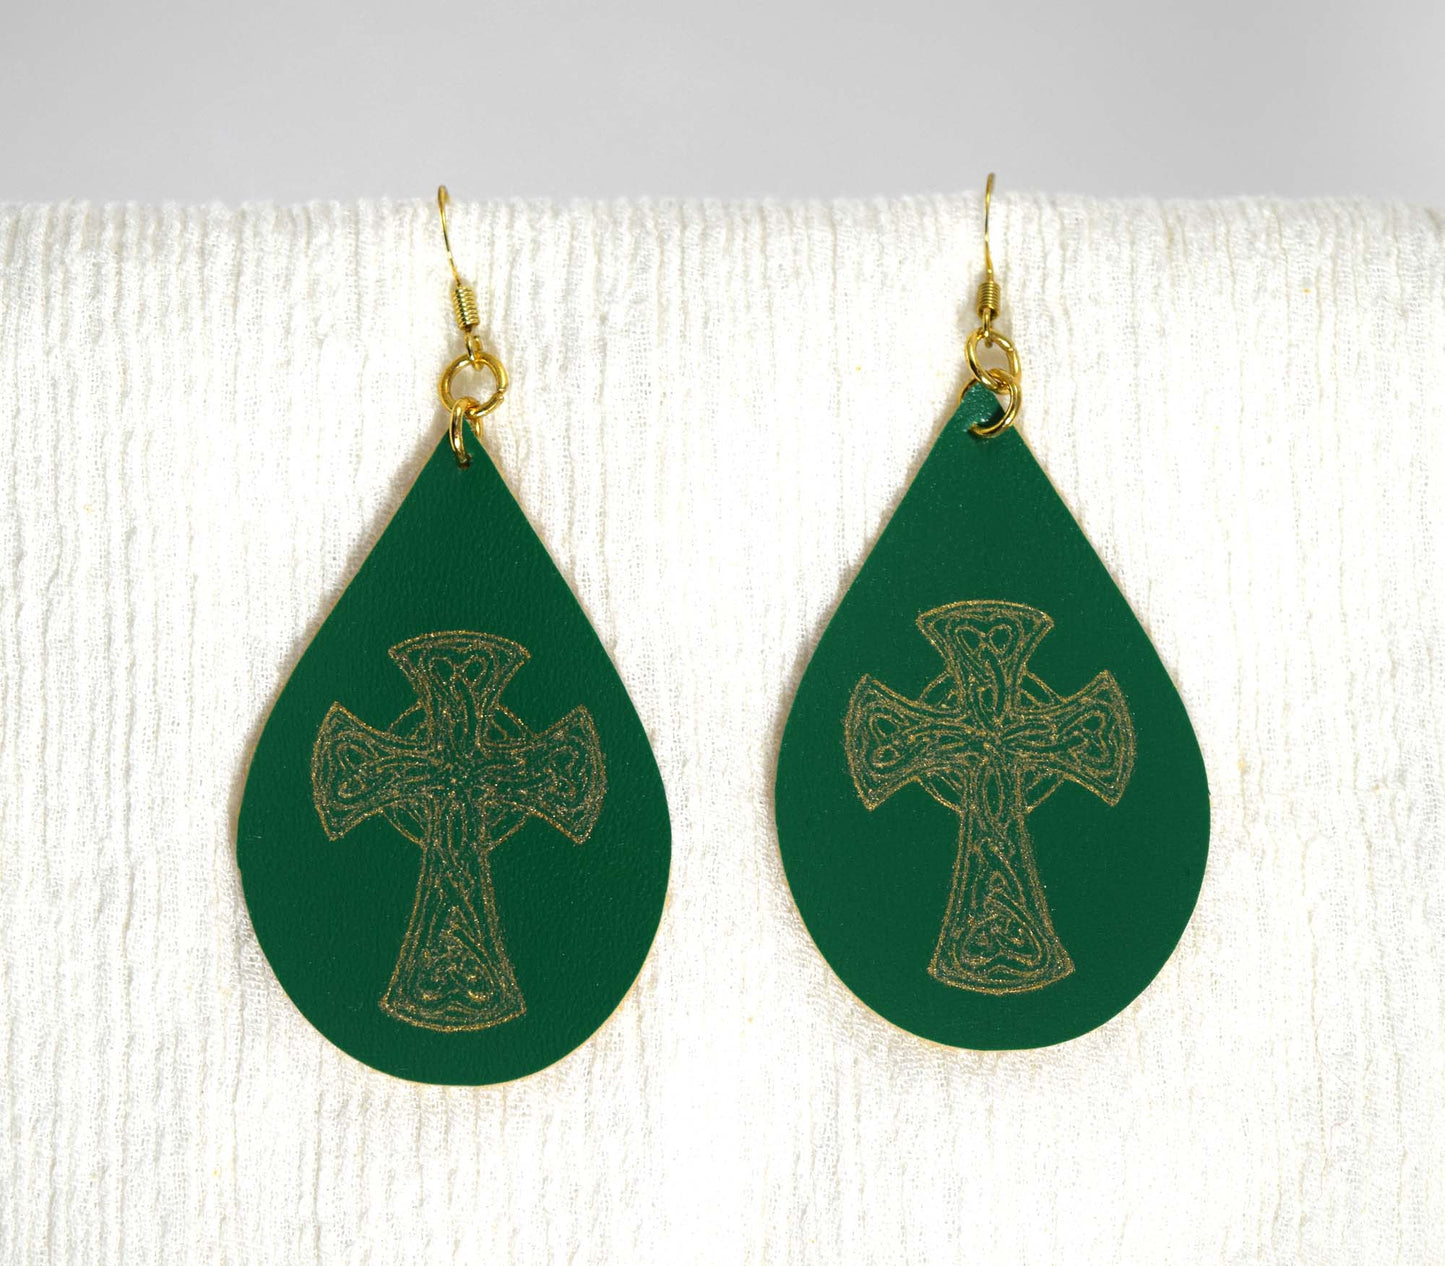 st patrick earrings, catholic earrings, faux leather catholic earrings, irish earrings, foil earrings